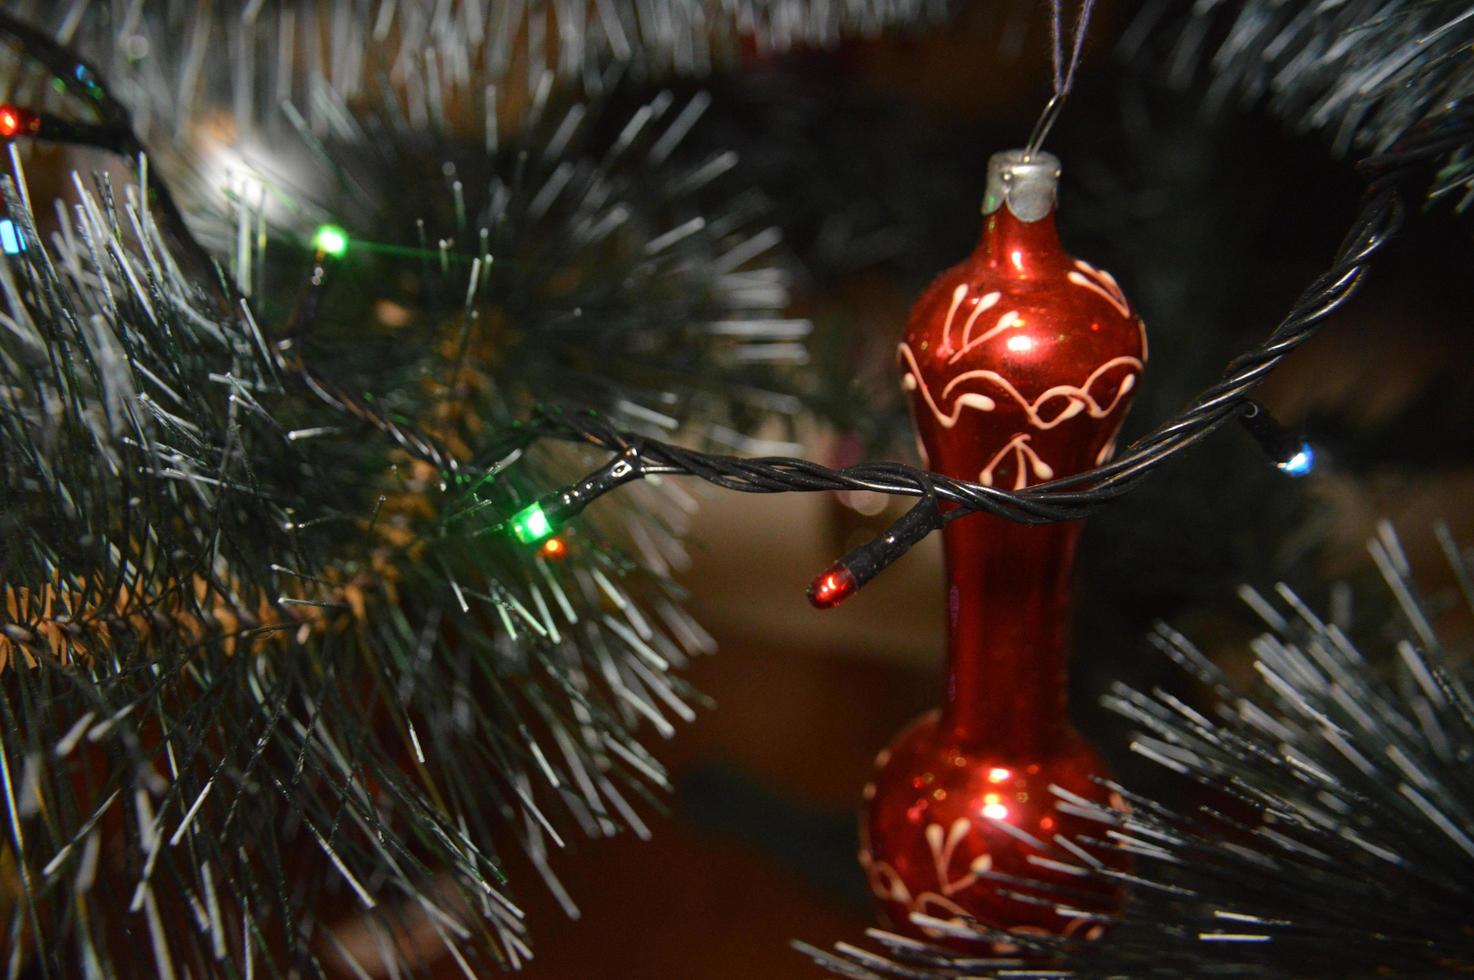 Weihnachtsbaum mit Spielzeug und leuchtenden Girlanden zu Hause und im Bürohintergrund foto